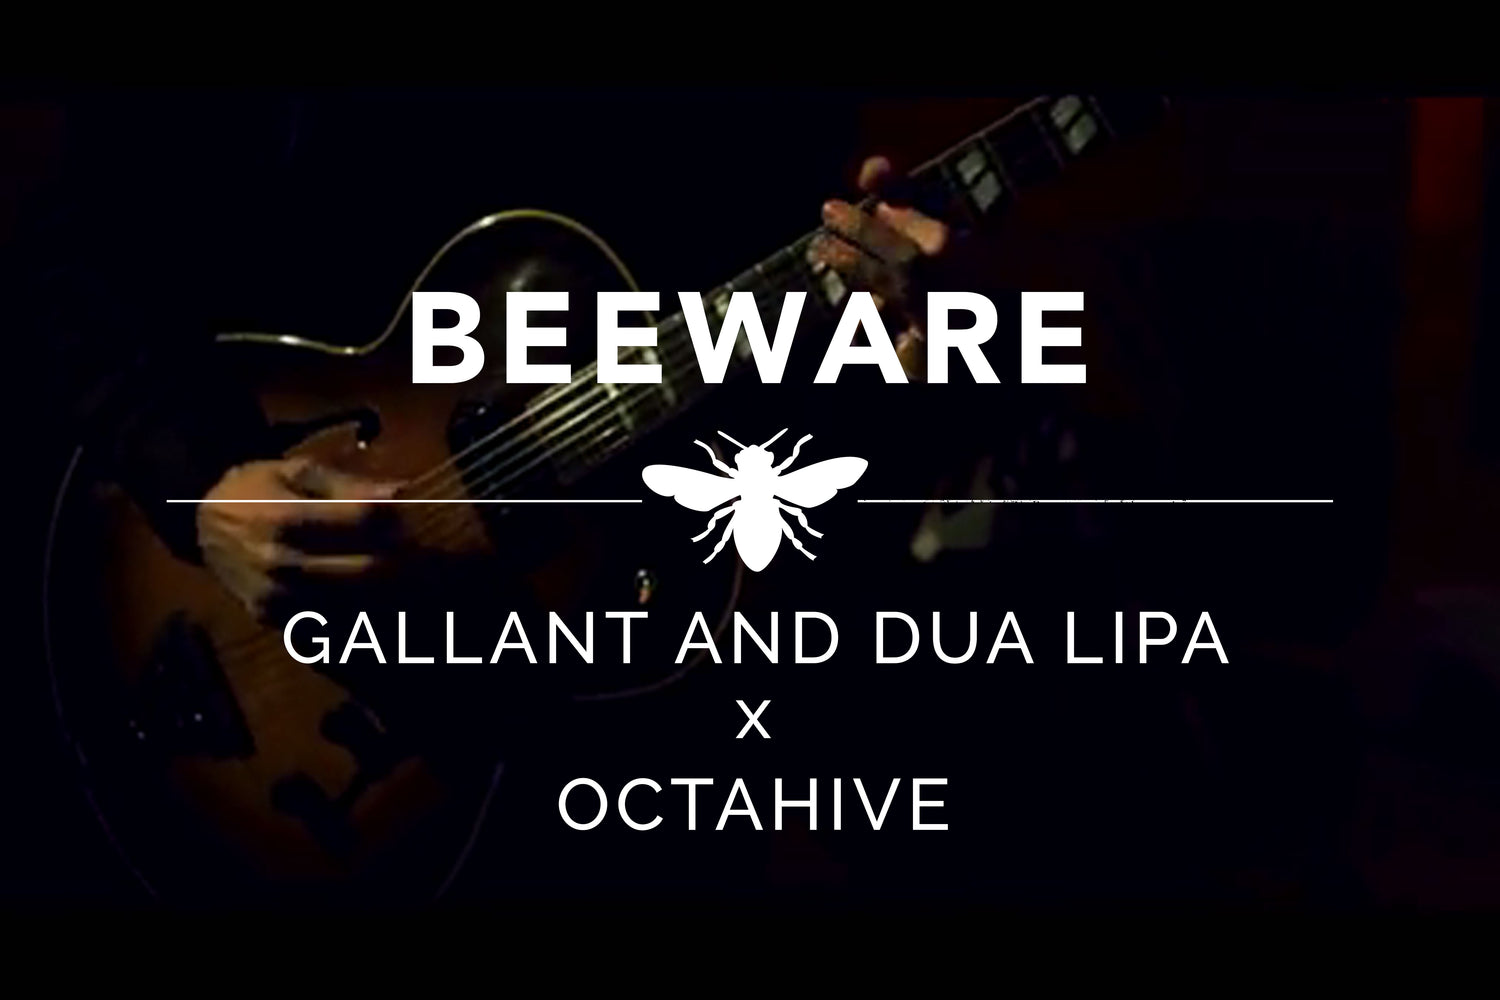 Beeware - Gallant and Dua Lipa X Octahive